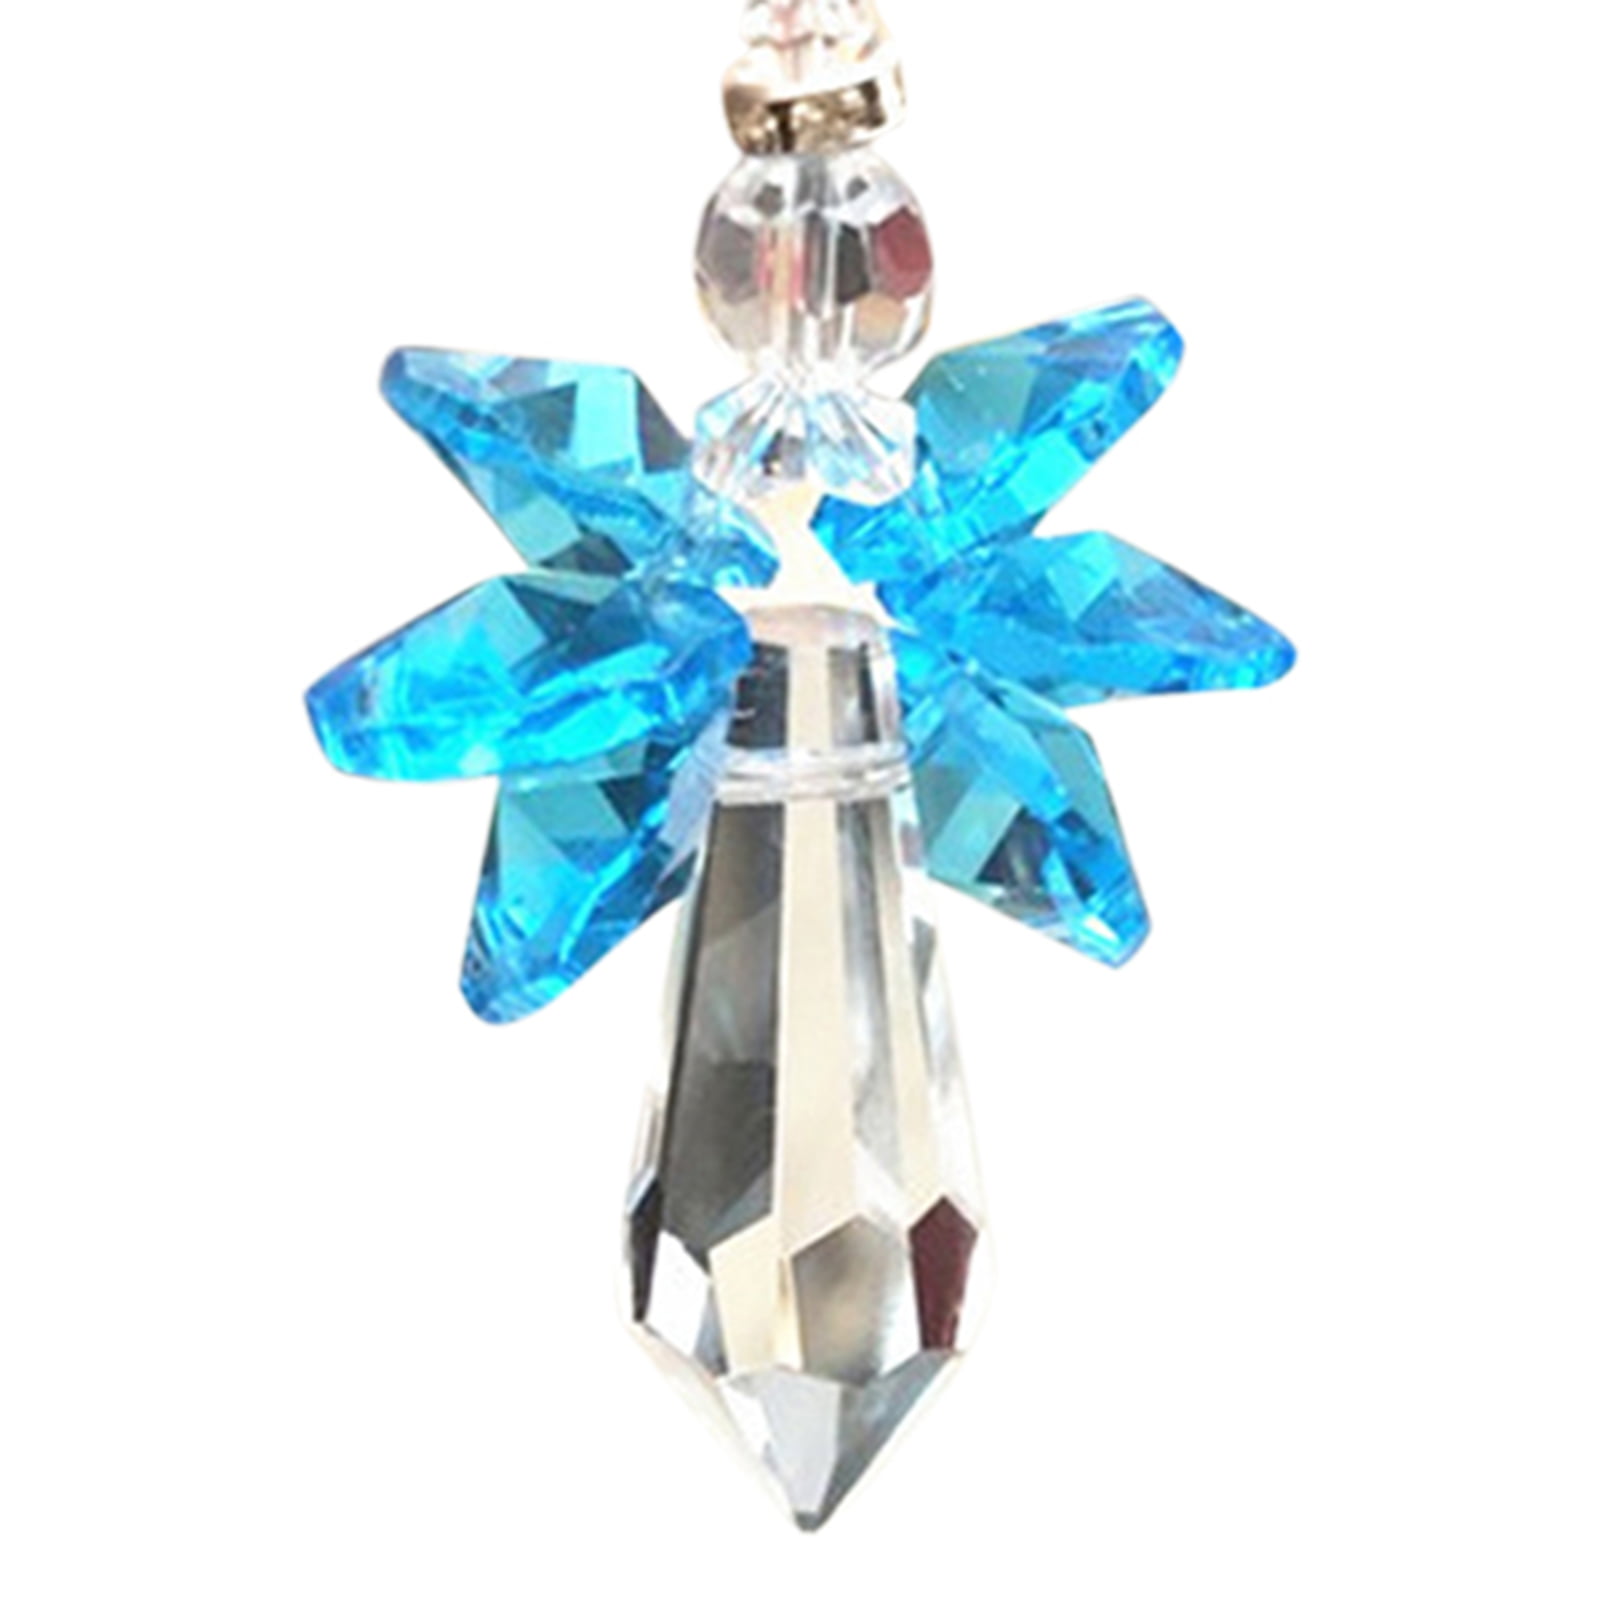 Details about   Rainbow Prisms Suncatcher-Chandelier Crystal Glass-Pendant Hanging Decoration US 